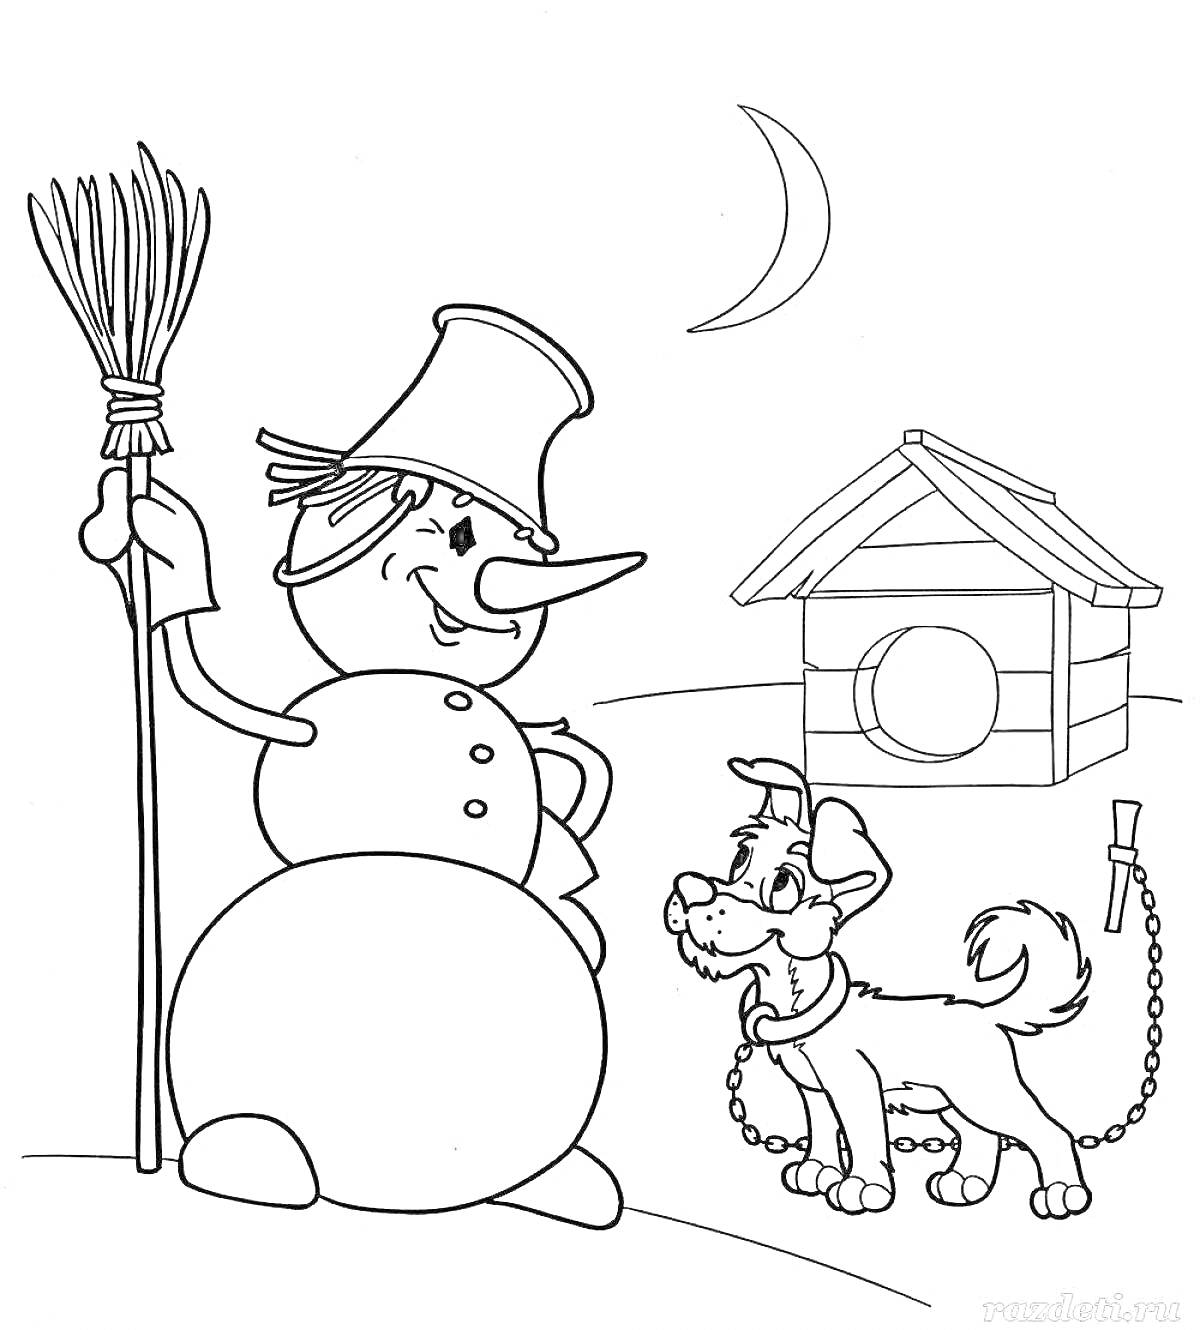 Раскраска Снеговик с ведром на голове, метлой и привязанной собакой на фоне будки и полумесяца